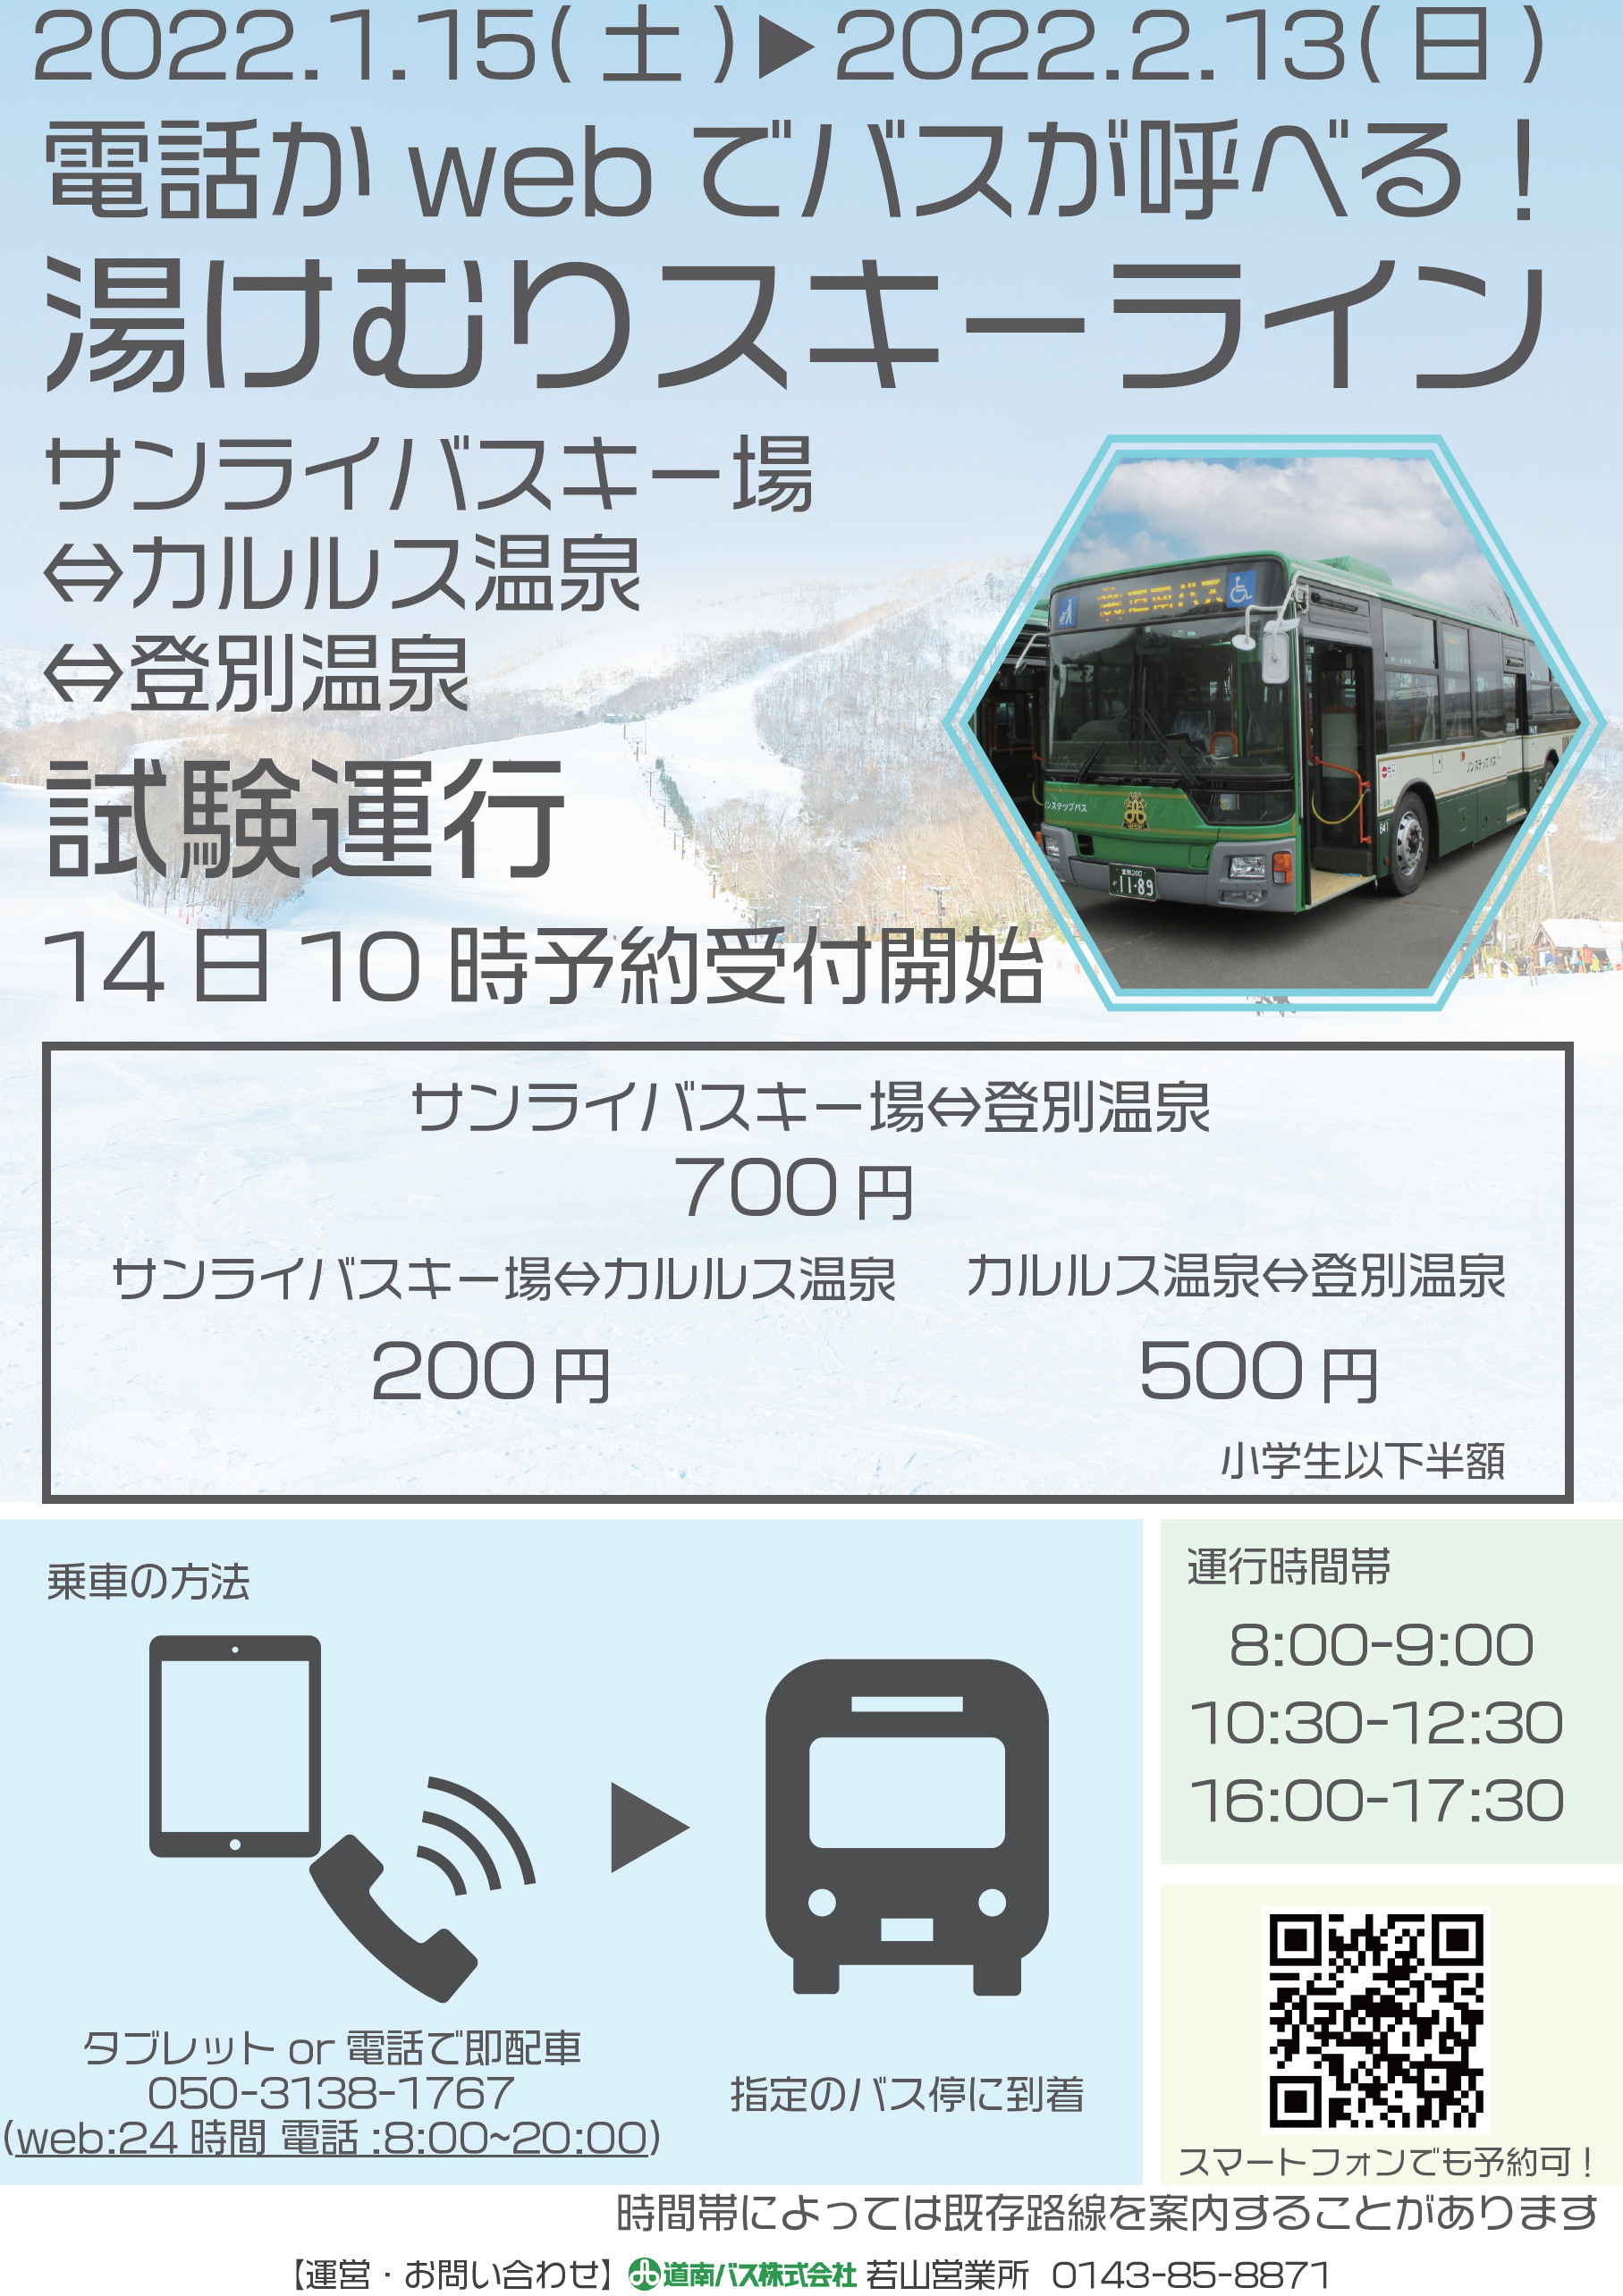 22 1 15 2 13 登別温泉 カルルス サンライバスキー場デマンドバス運行について 道南バス株式会社